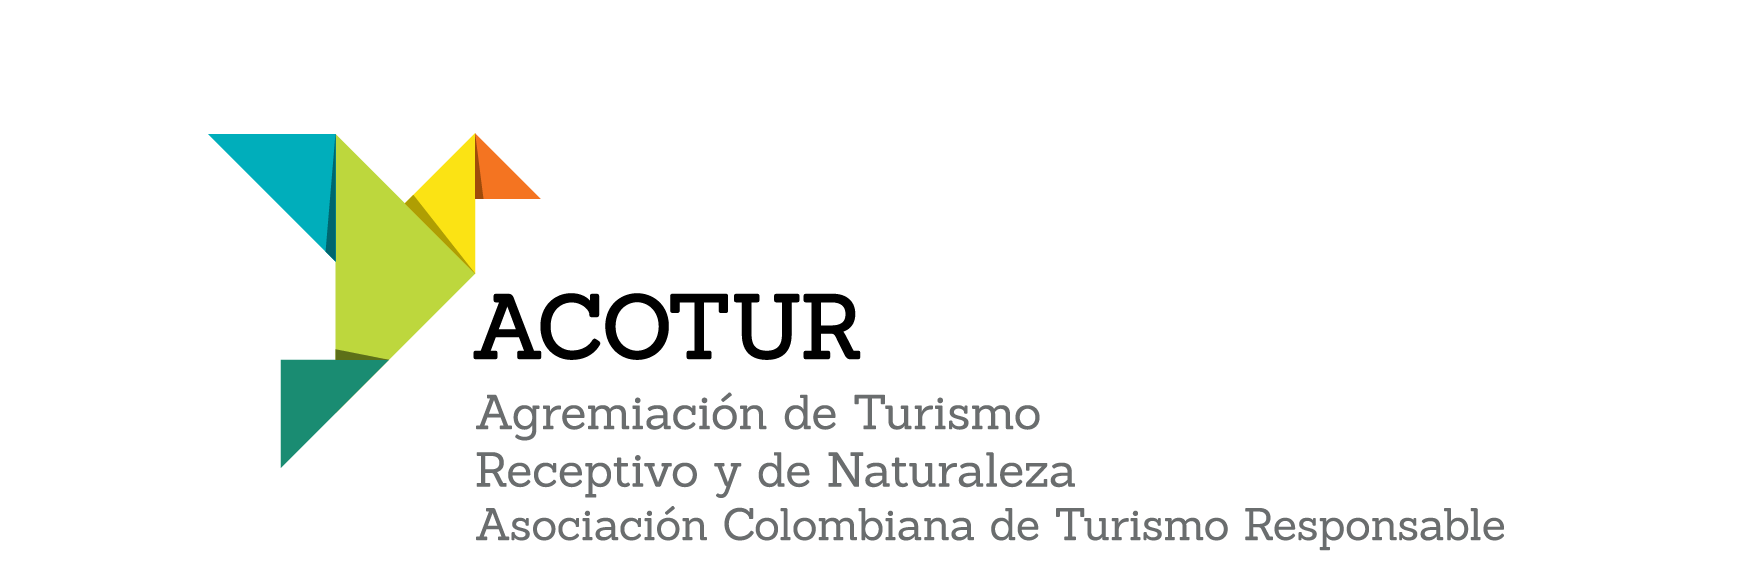 Logo ACOTUR Agremiación de turismo